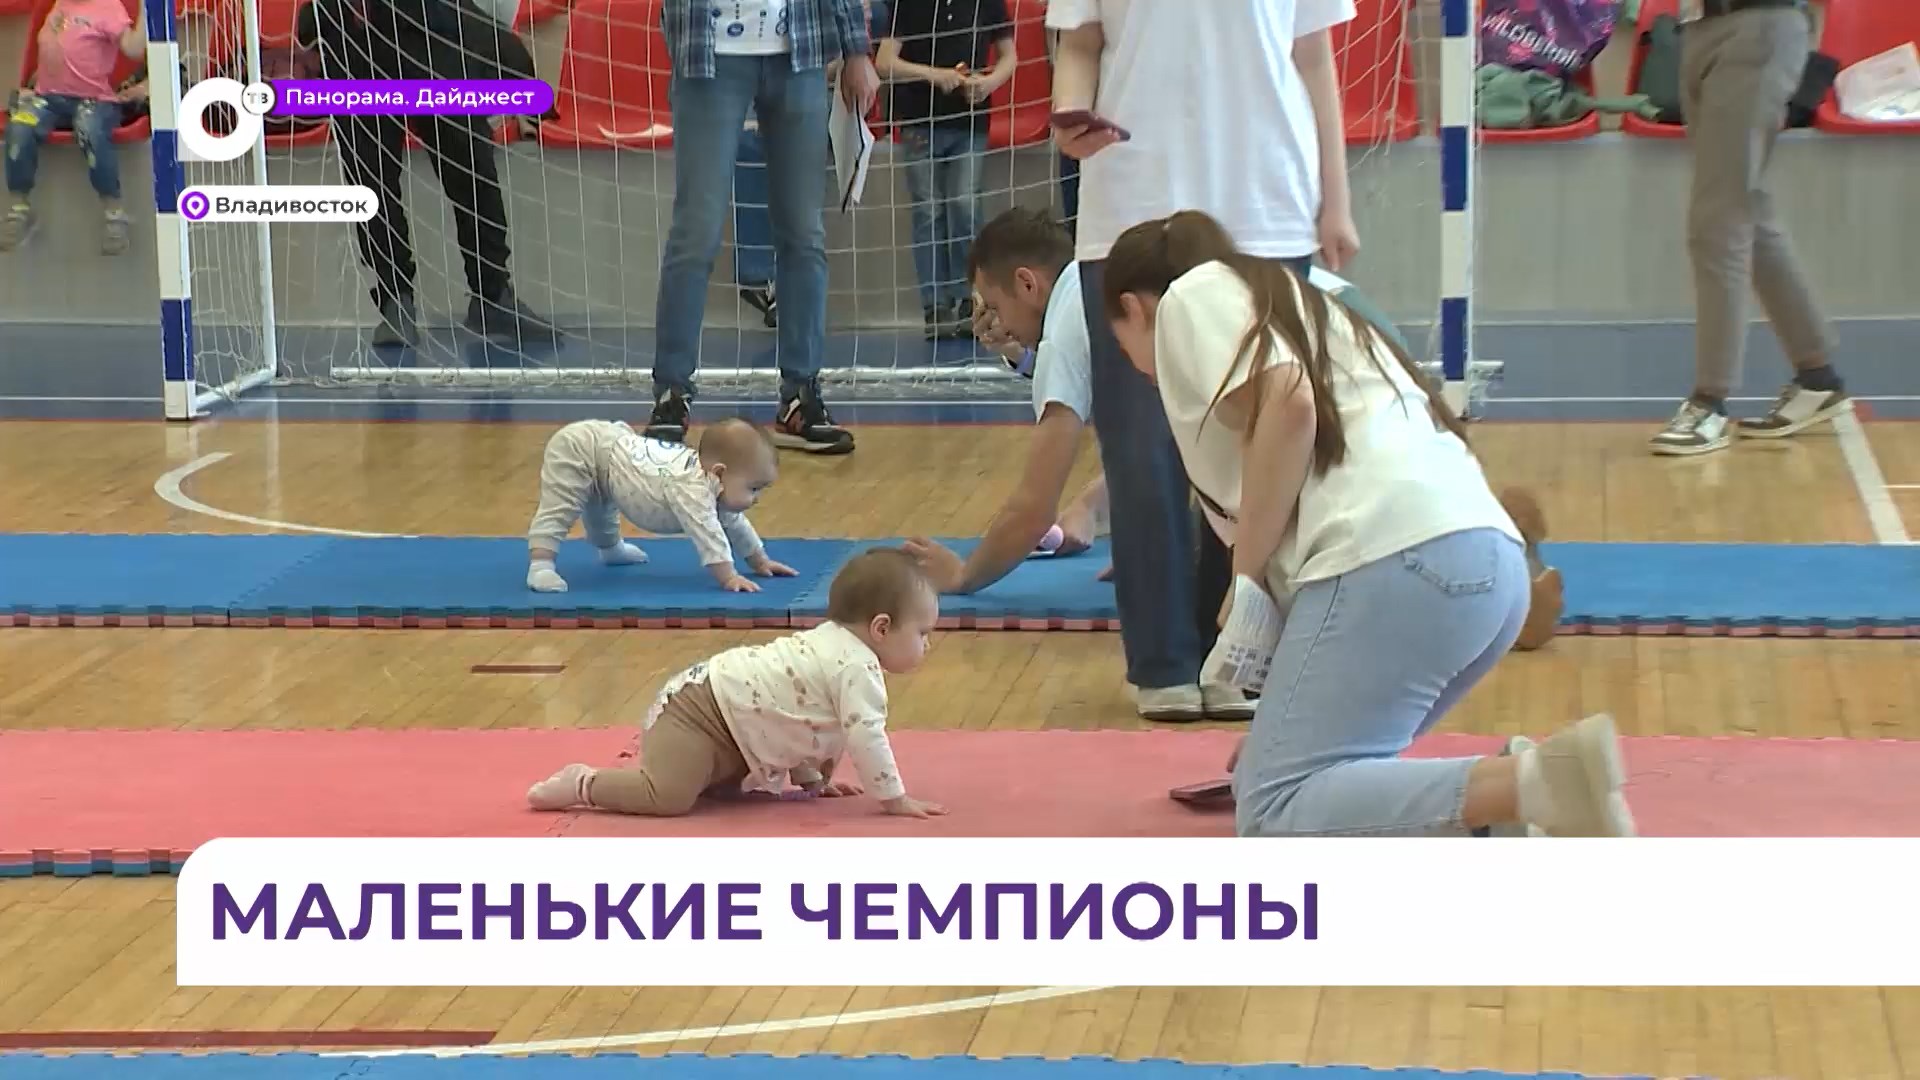 Соревнования маленьких чемпионов в ползунках прошли во Владивостоке